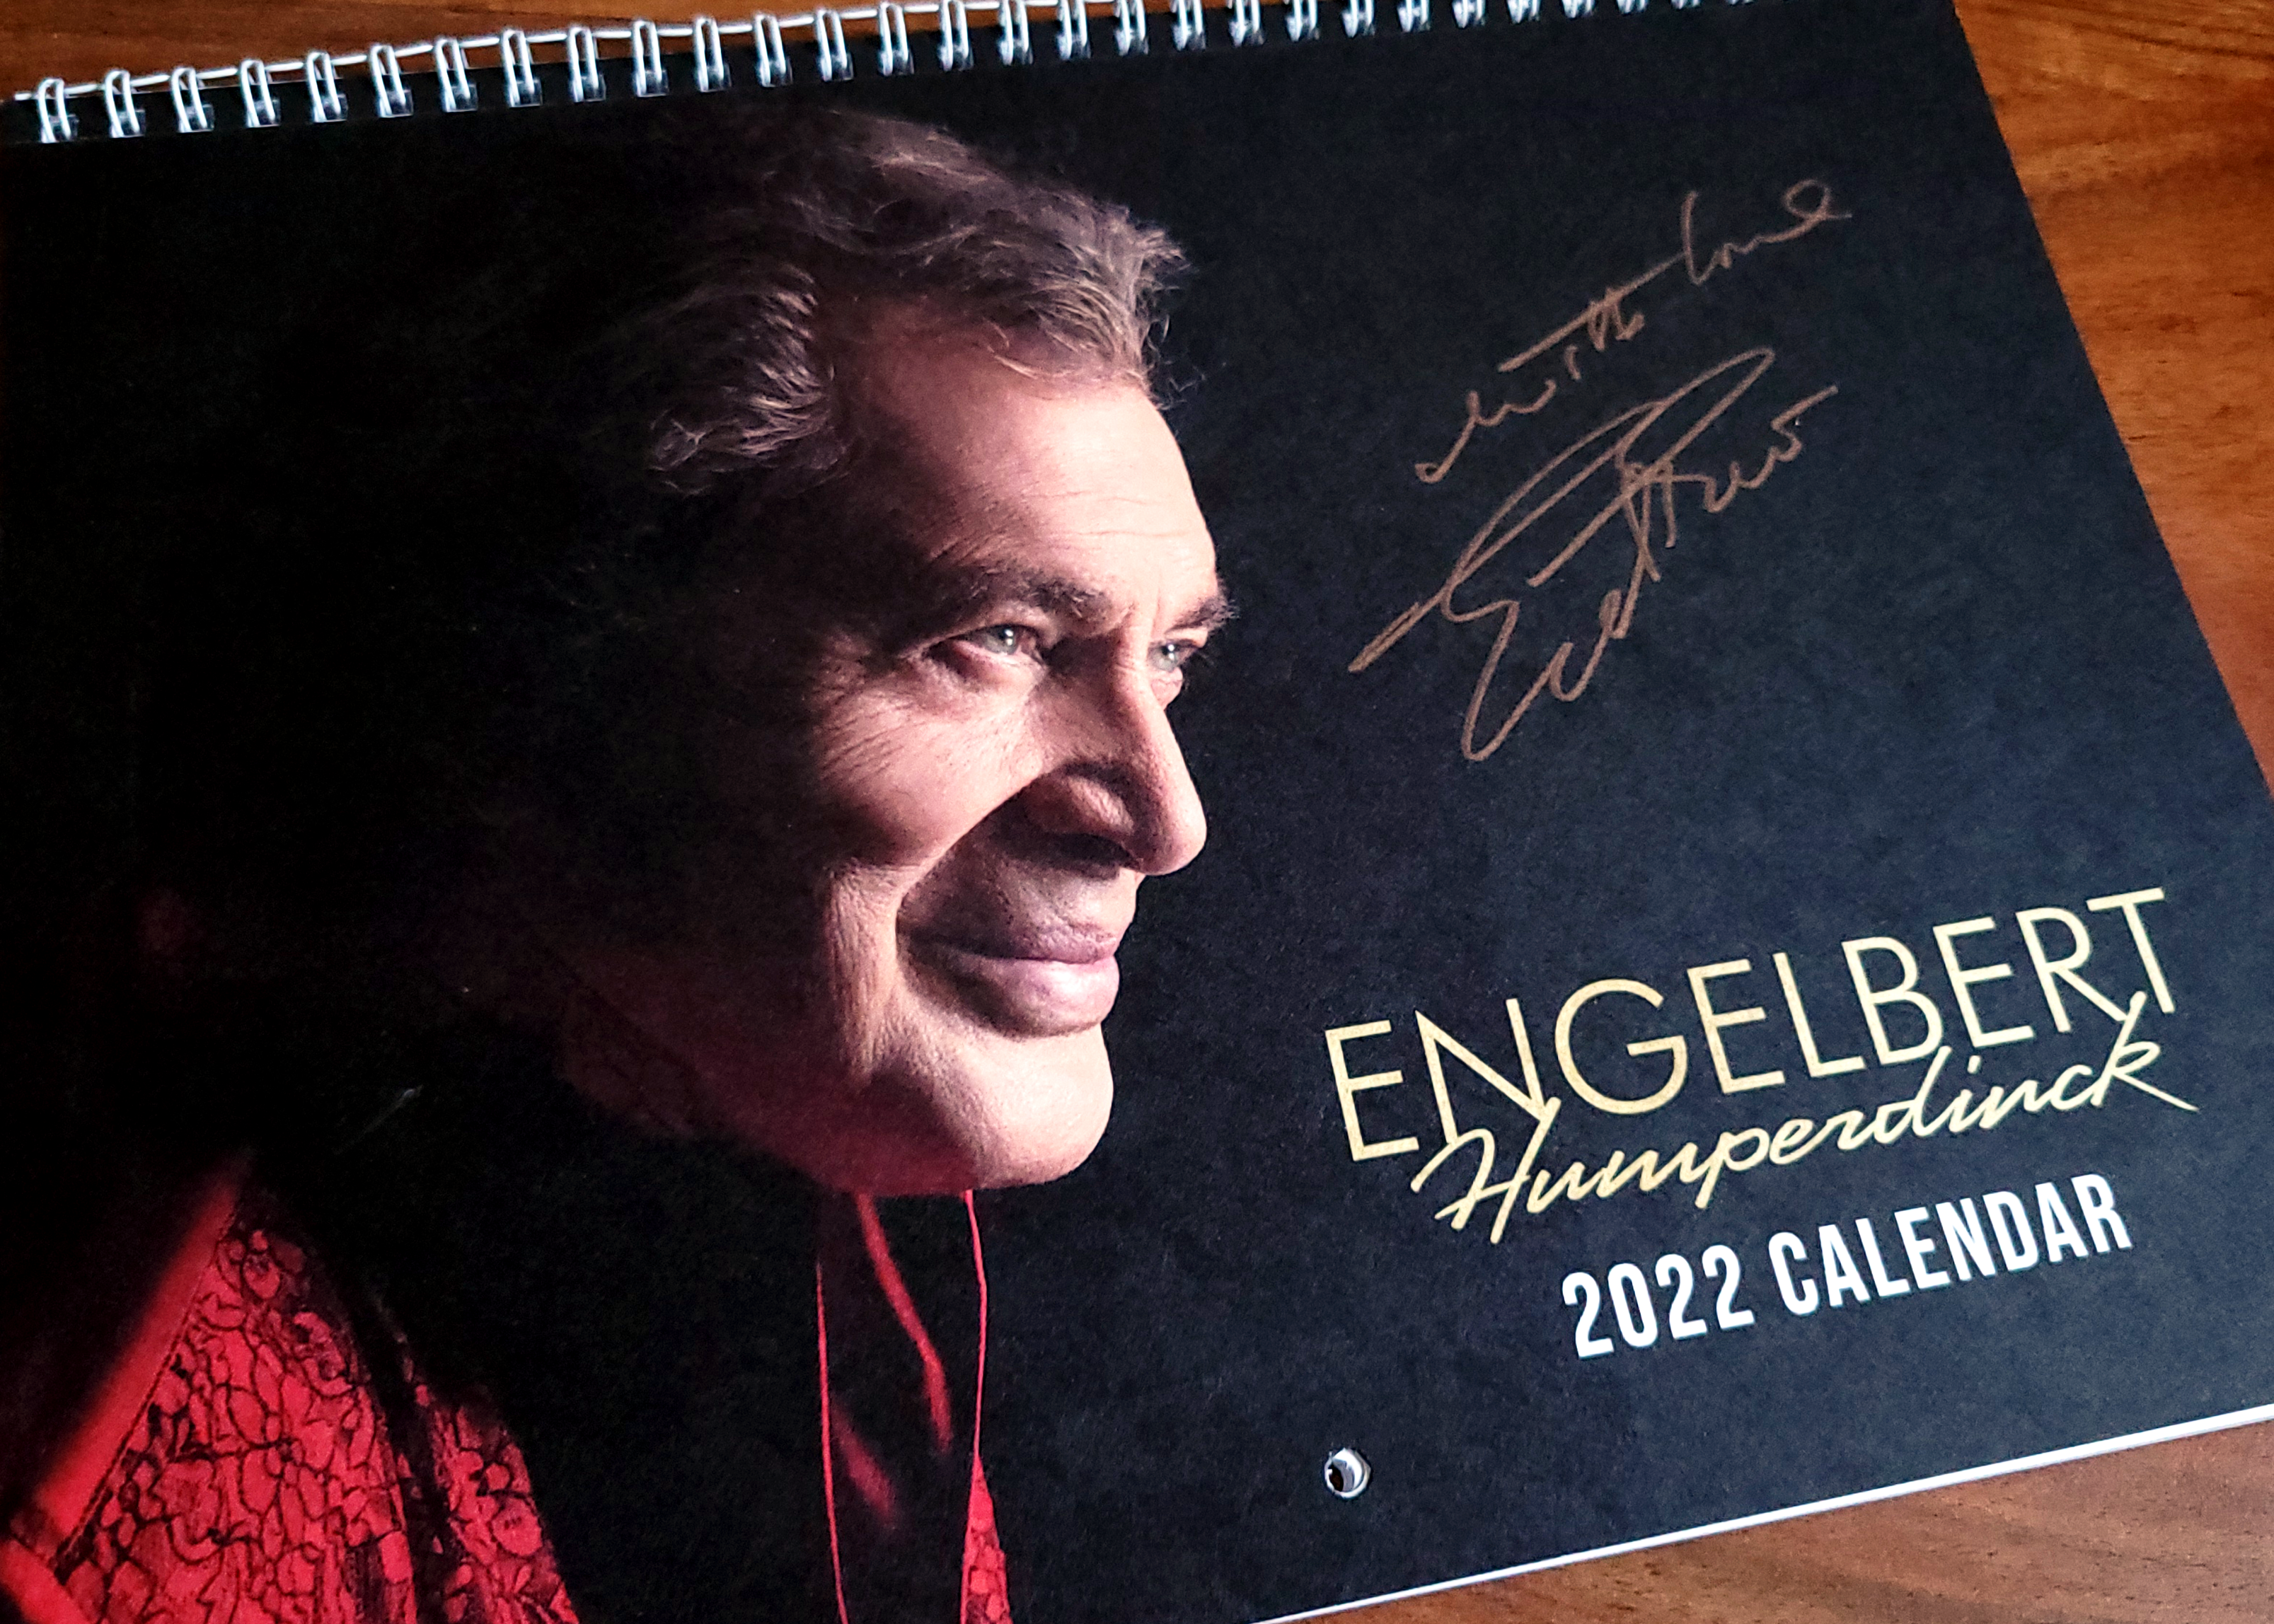 Limited Edition Autographed Engelbert Humperdinck 2022 Wall Calendar